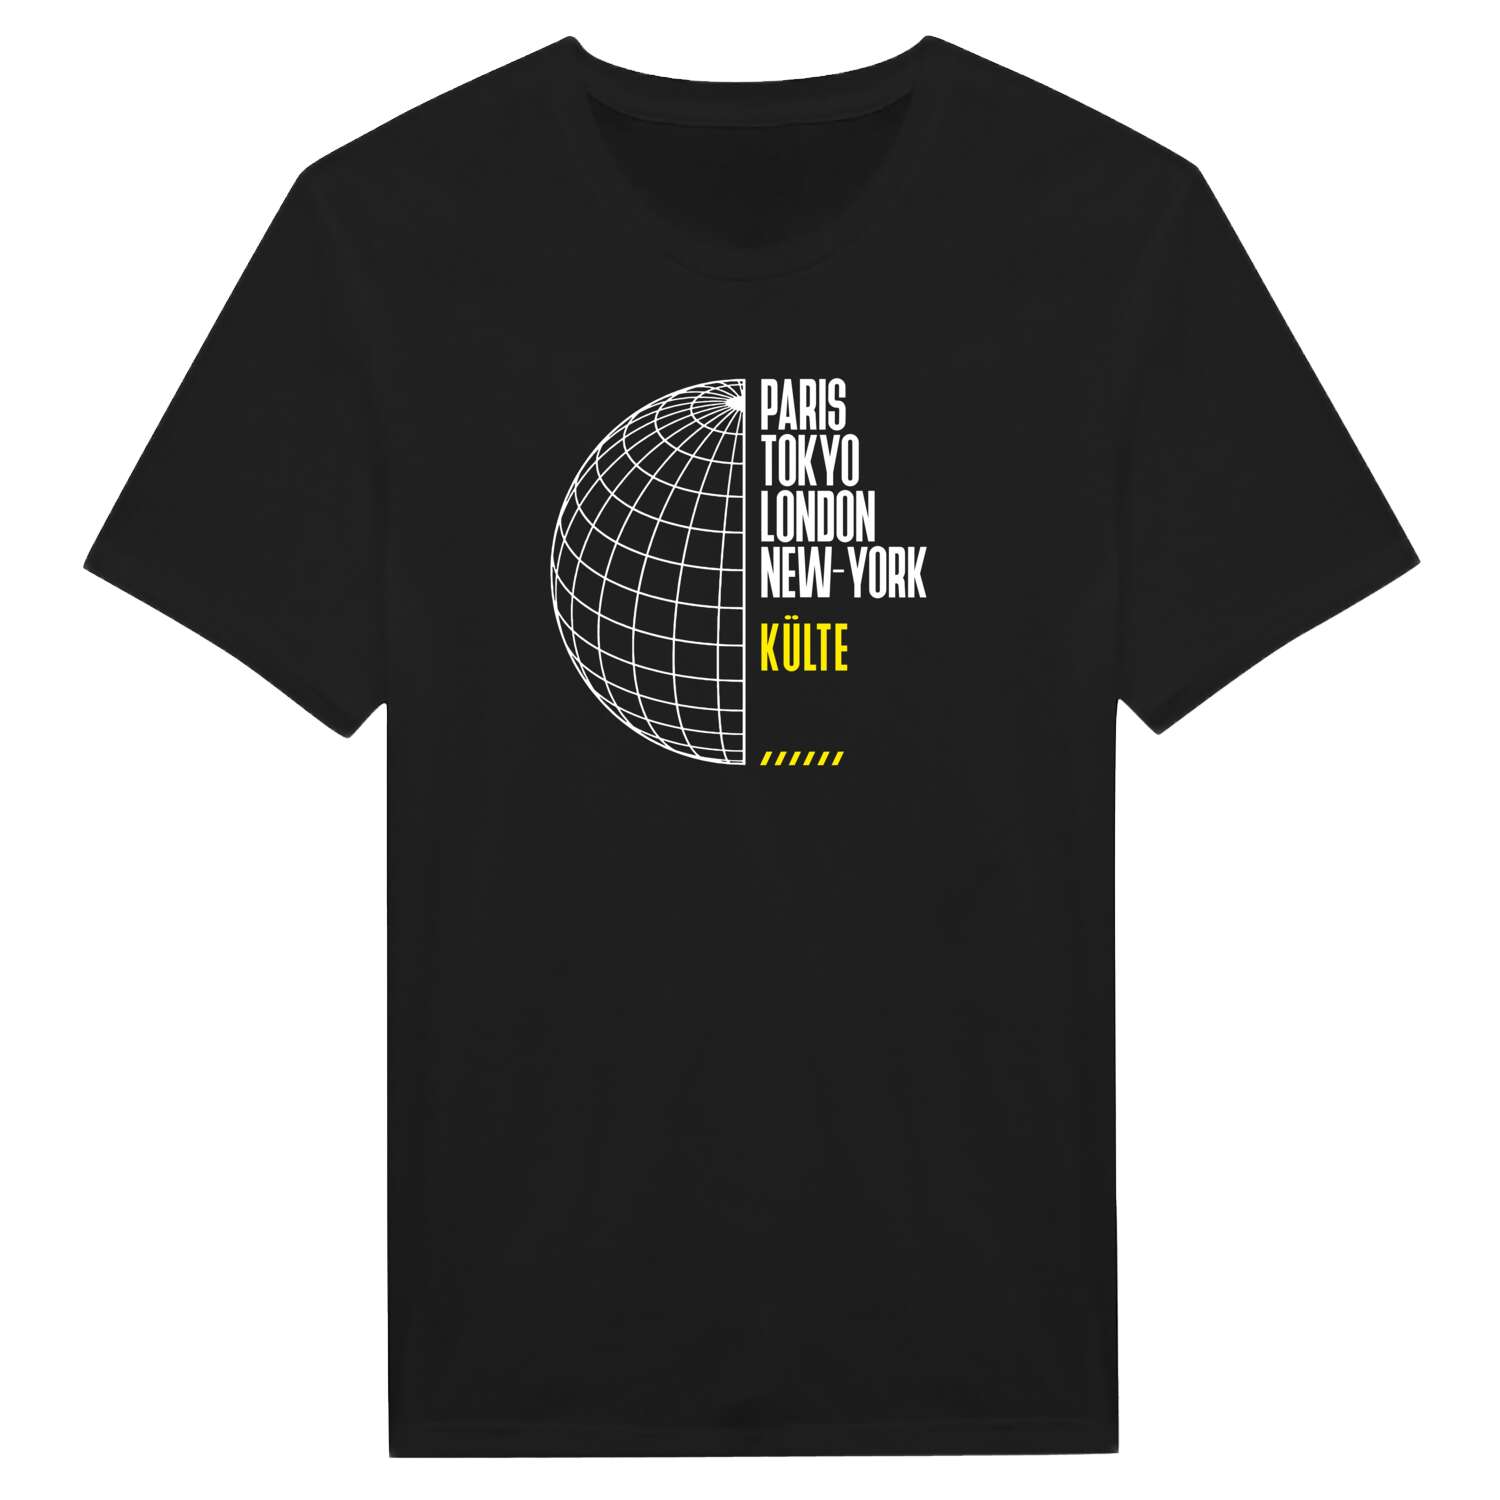 Külte T-Shirt »Paris Tokyo London«